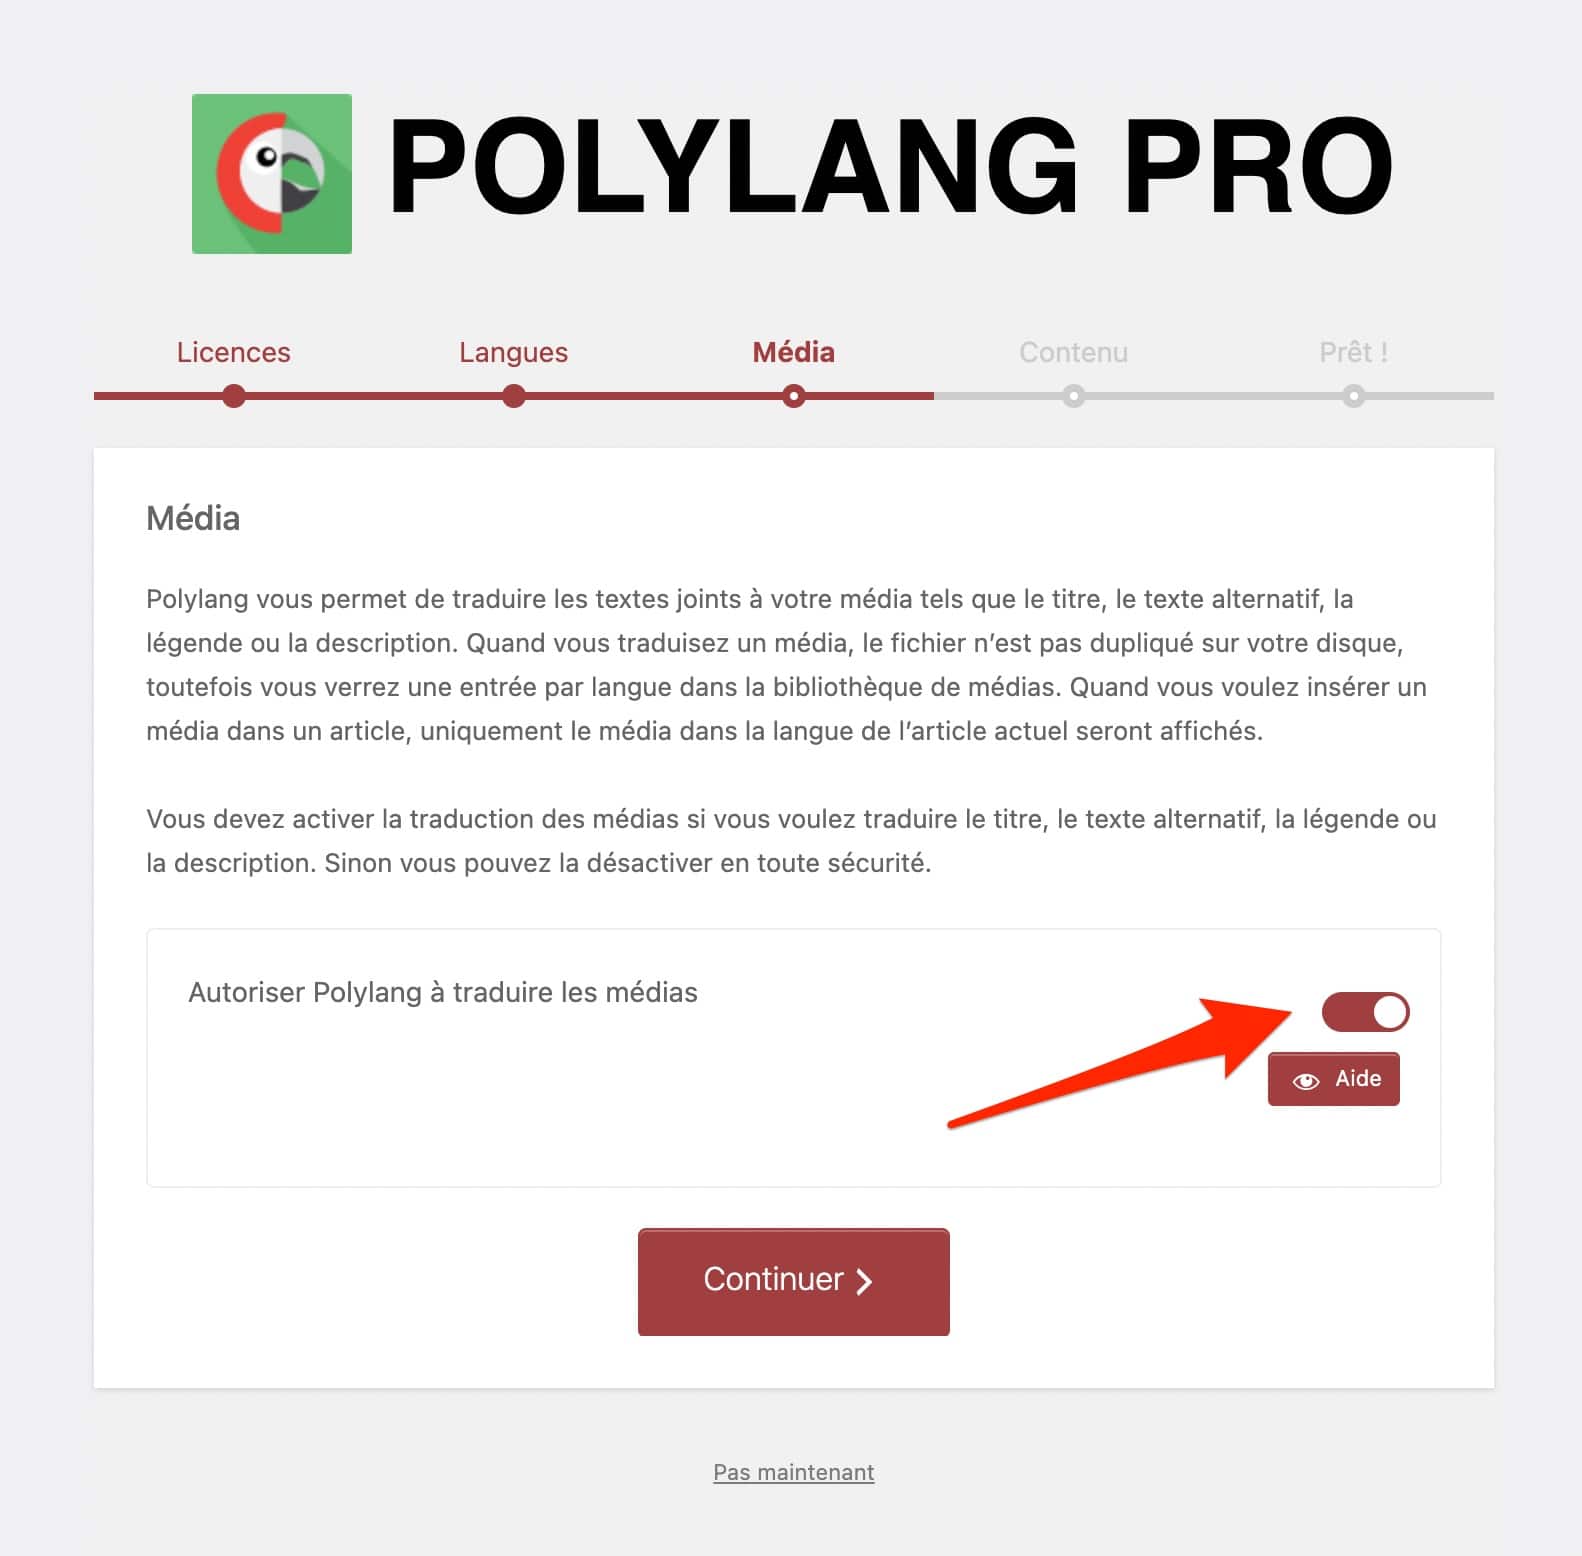 Polylang propose de traduire ou non les textes joints aux médias.